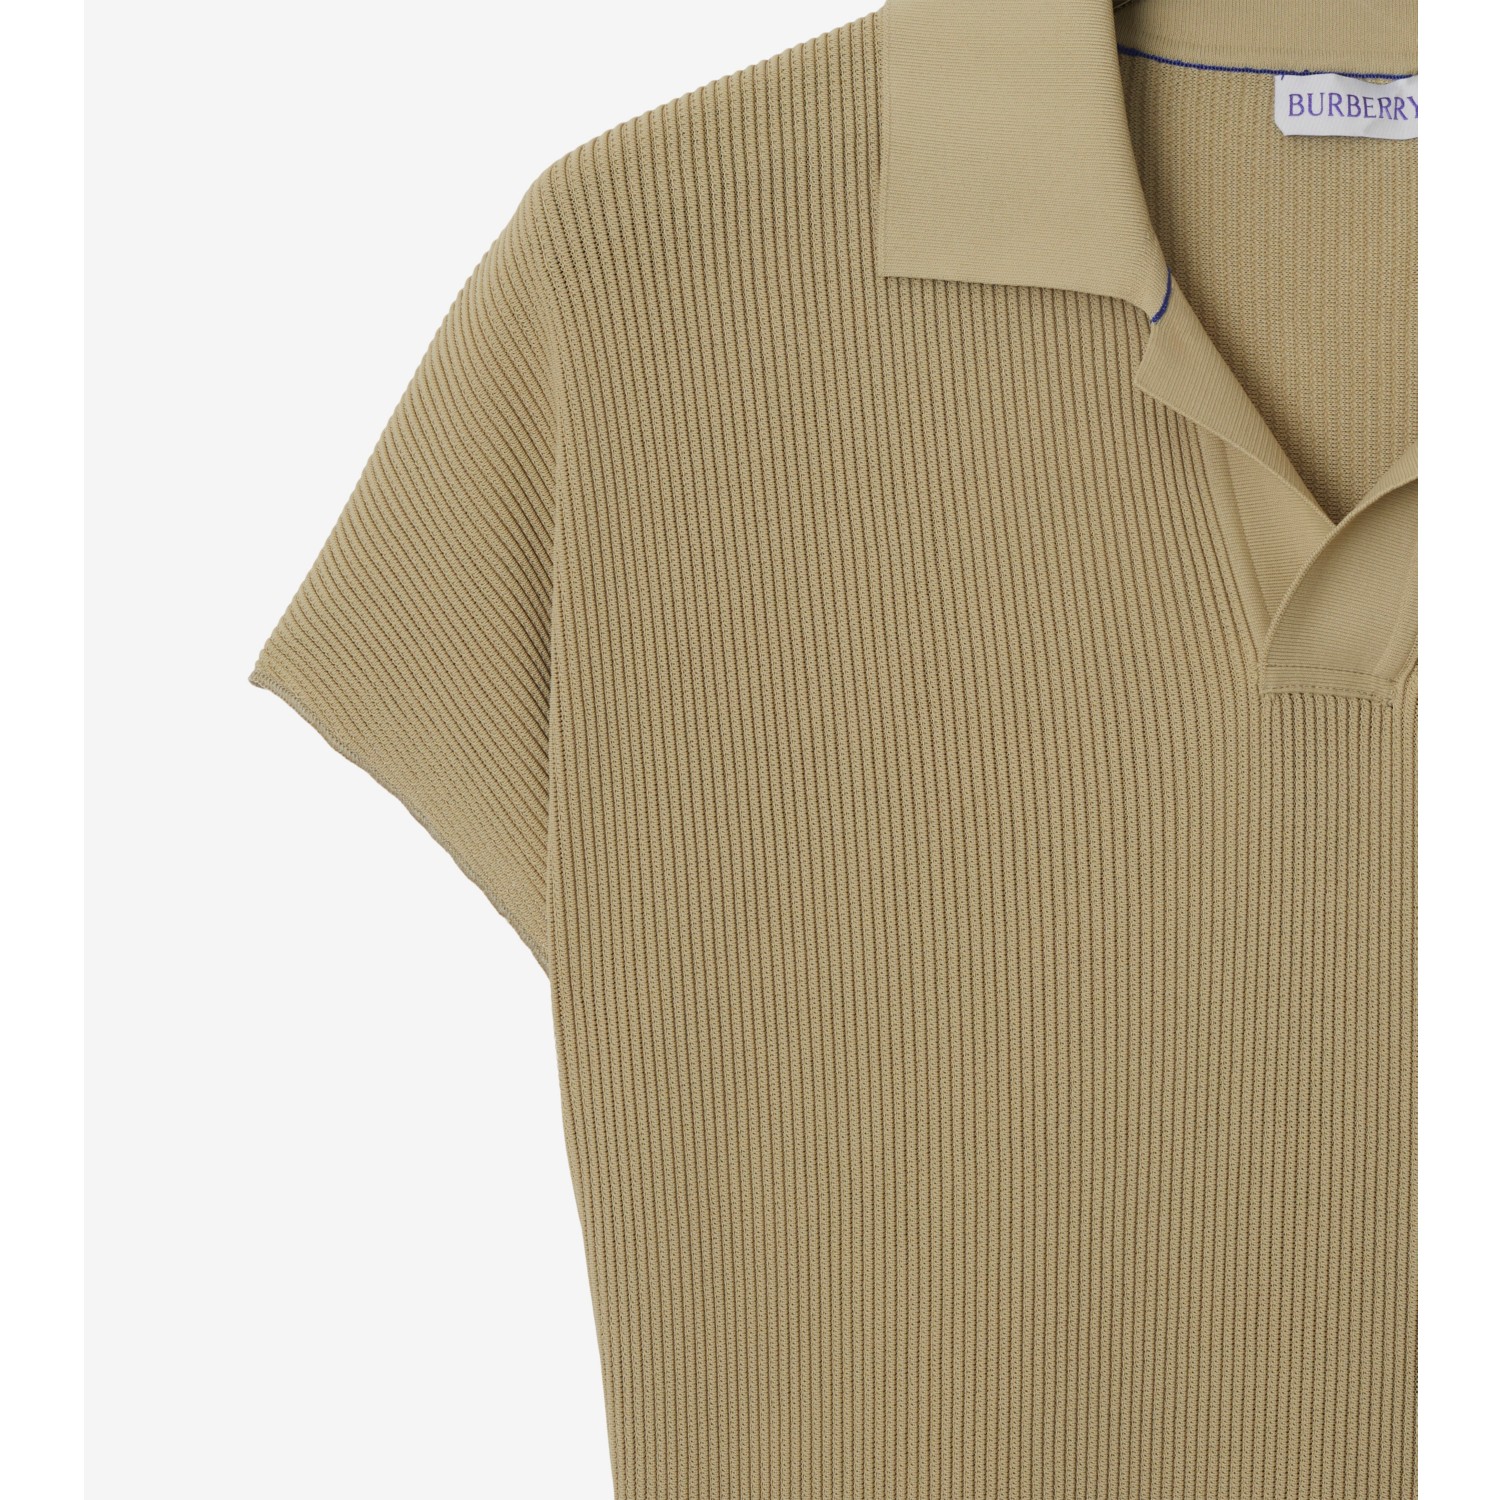 Rib Knit Polo Shirt Dress